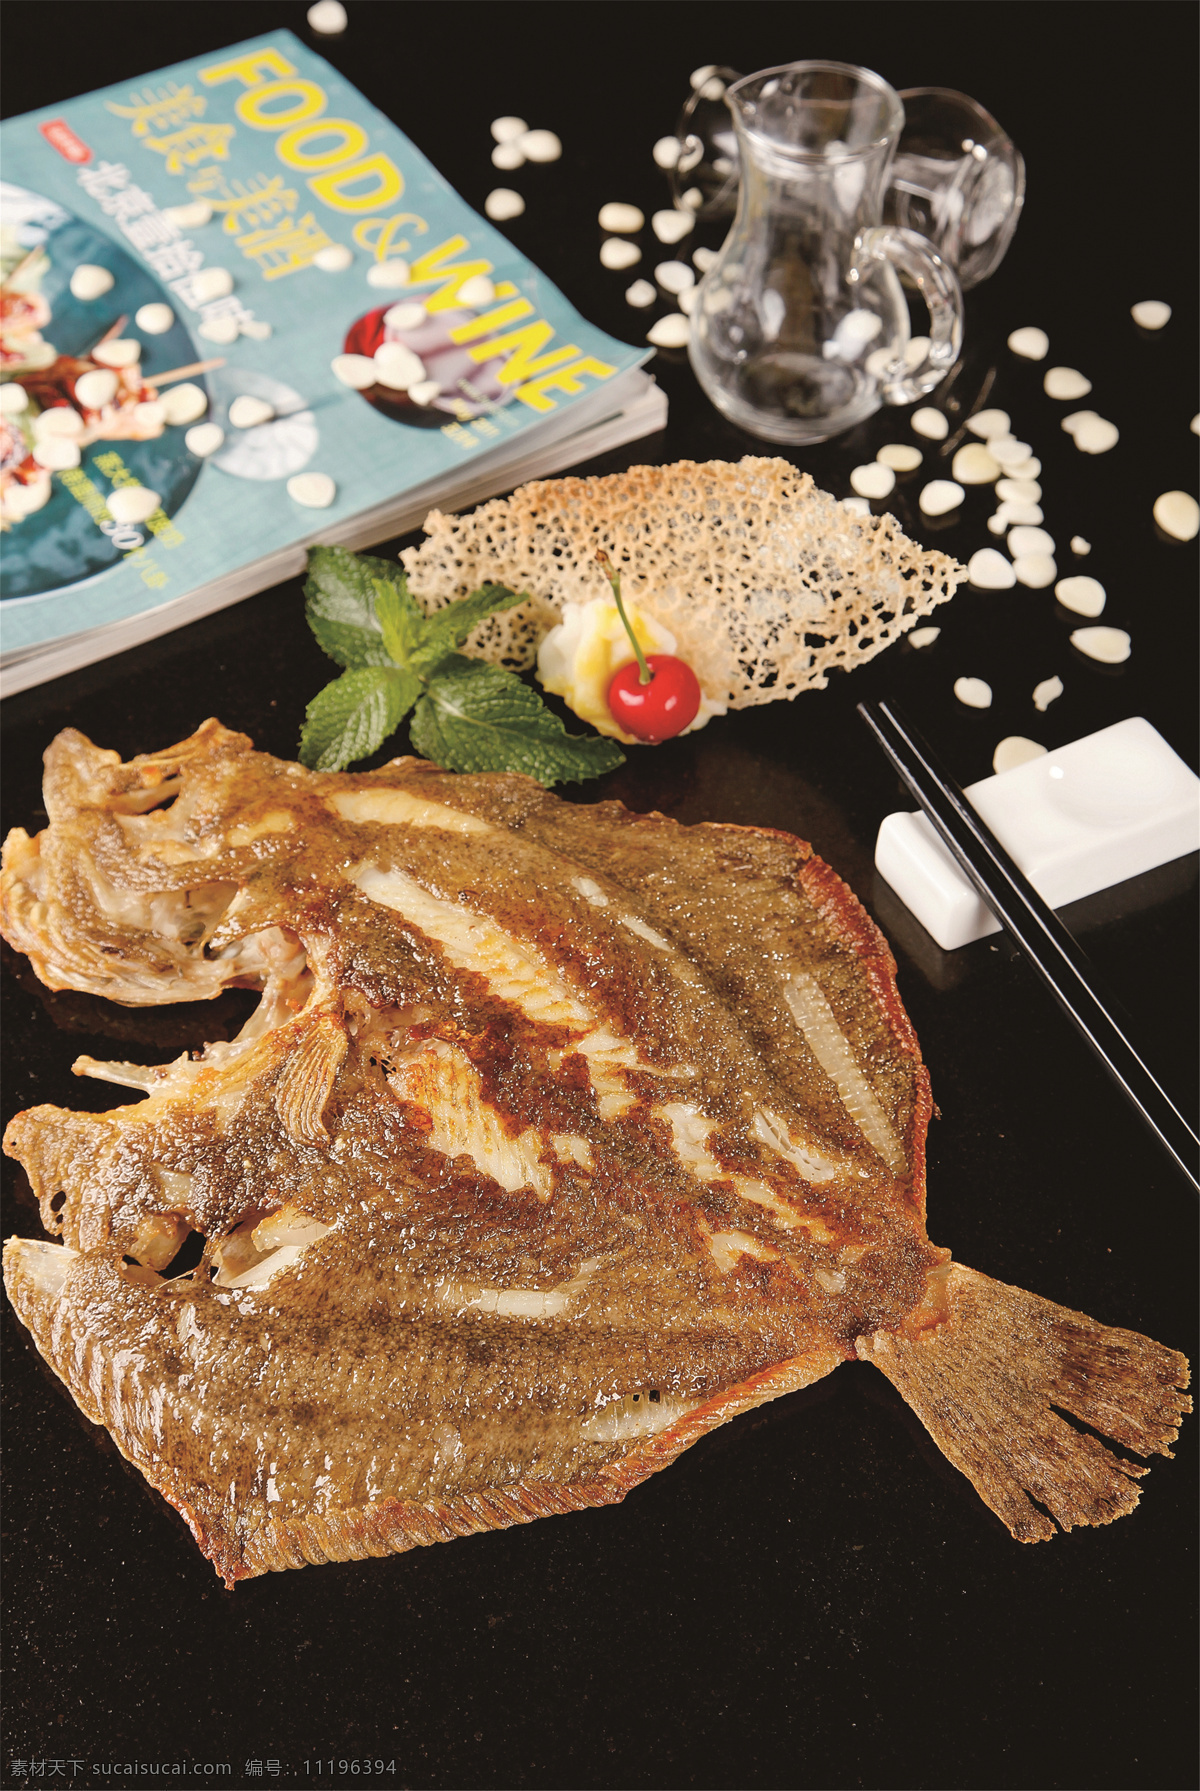 铁板 煎 多宝 鱼 铁板煎多宝鱼 美食 传统美食 餐饮美食 高清菜谱用图